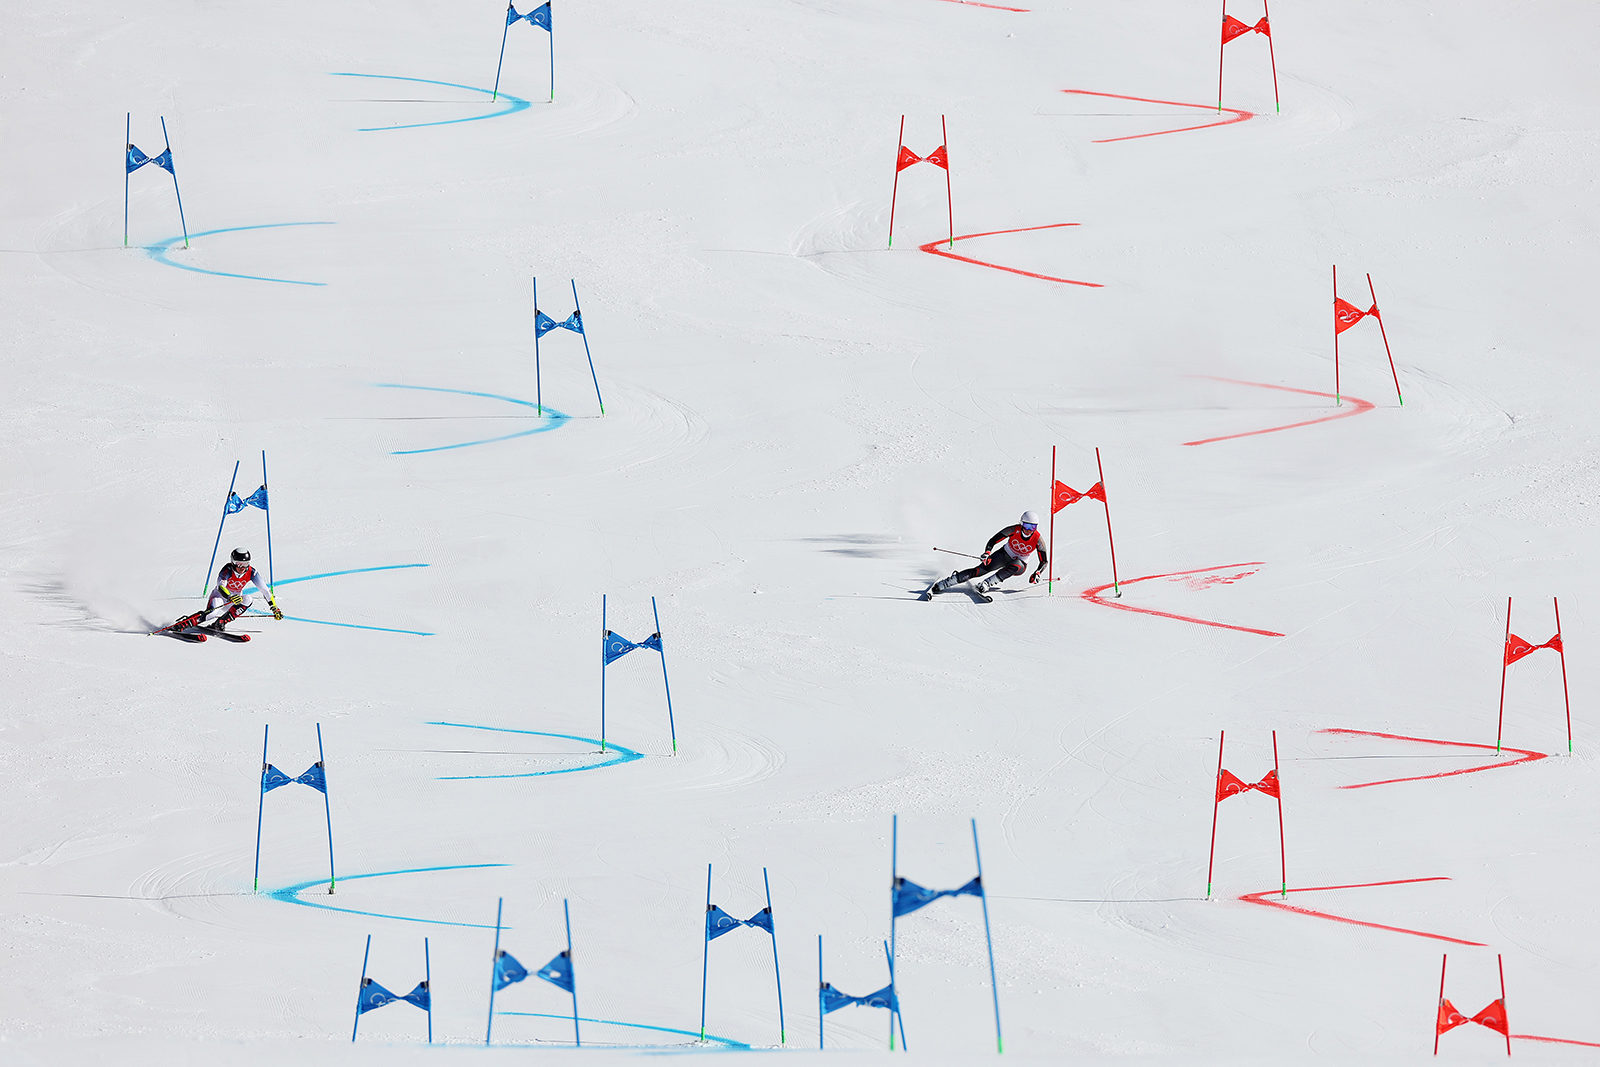 Norja päätti vuoden 2022 Pekingin eniten talviolympialaisissa voitettuaan kultaan